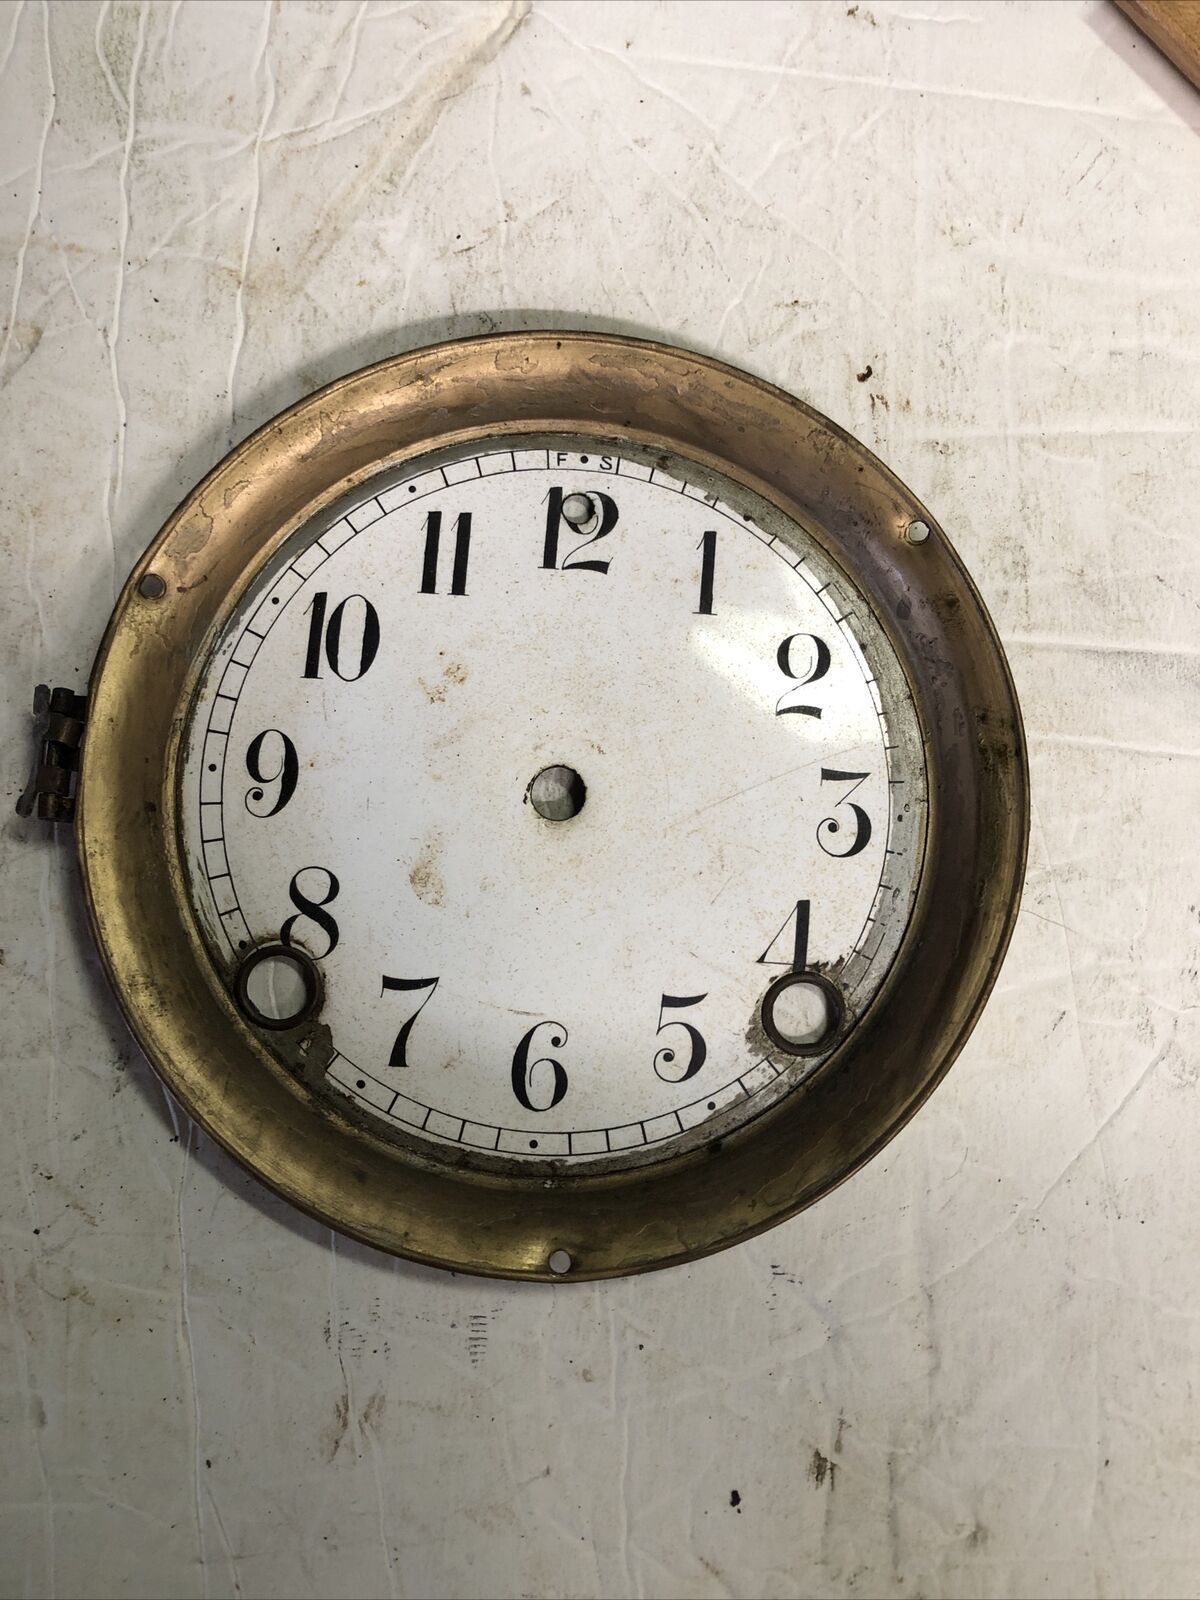 Vintage Sessions Mantle Clock Face PARTS REPAIR